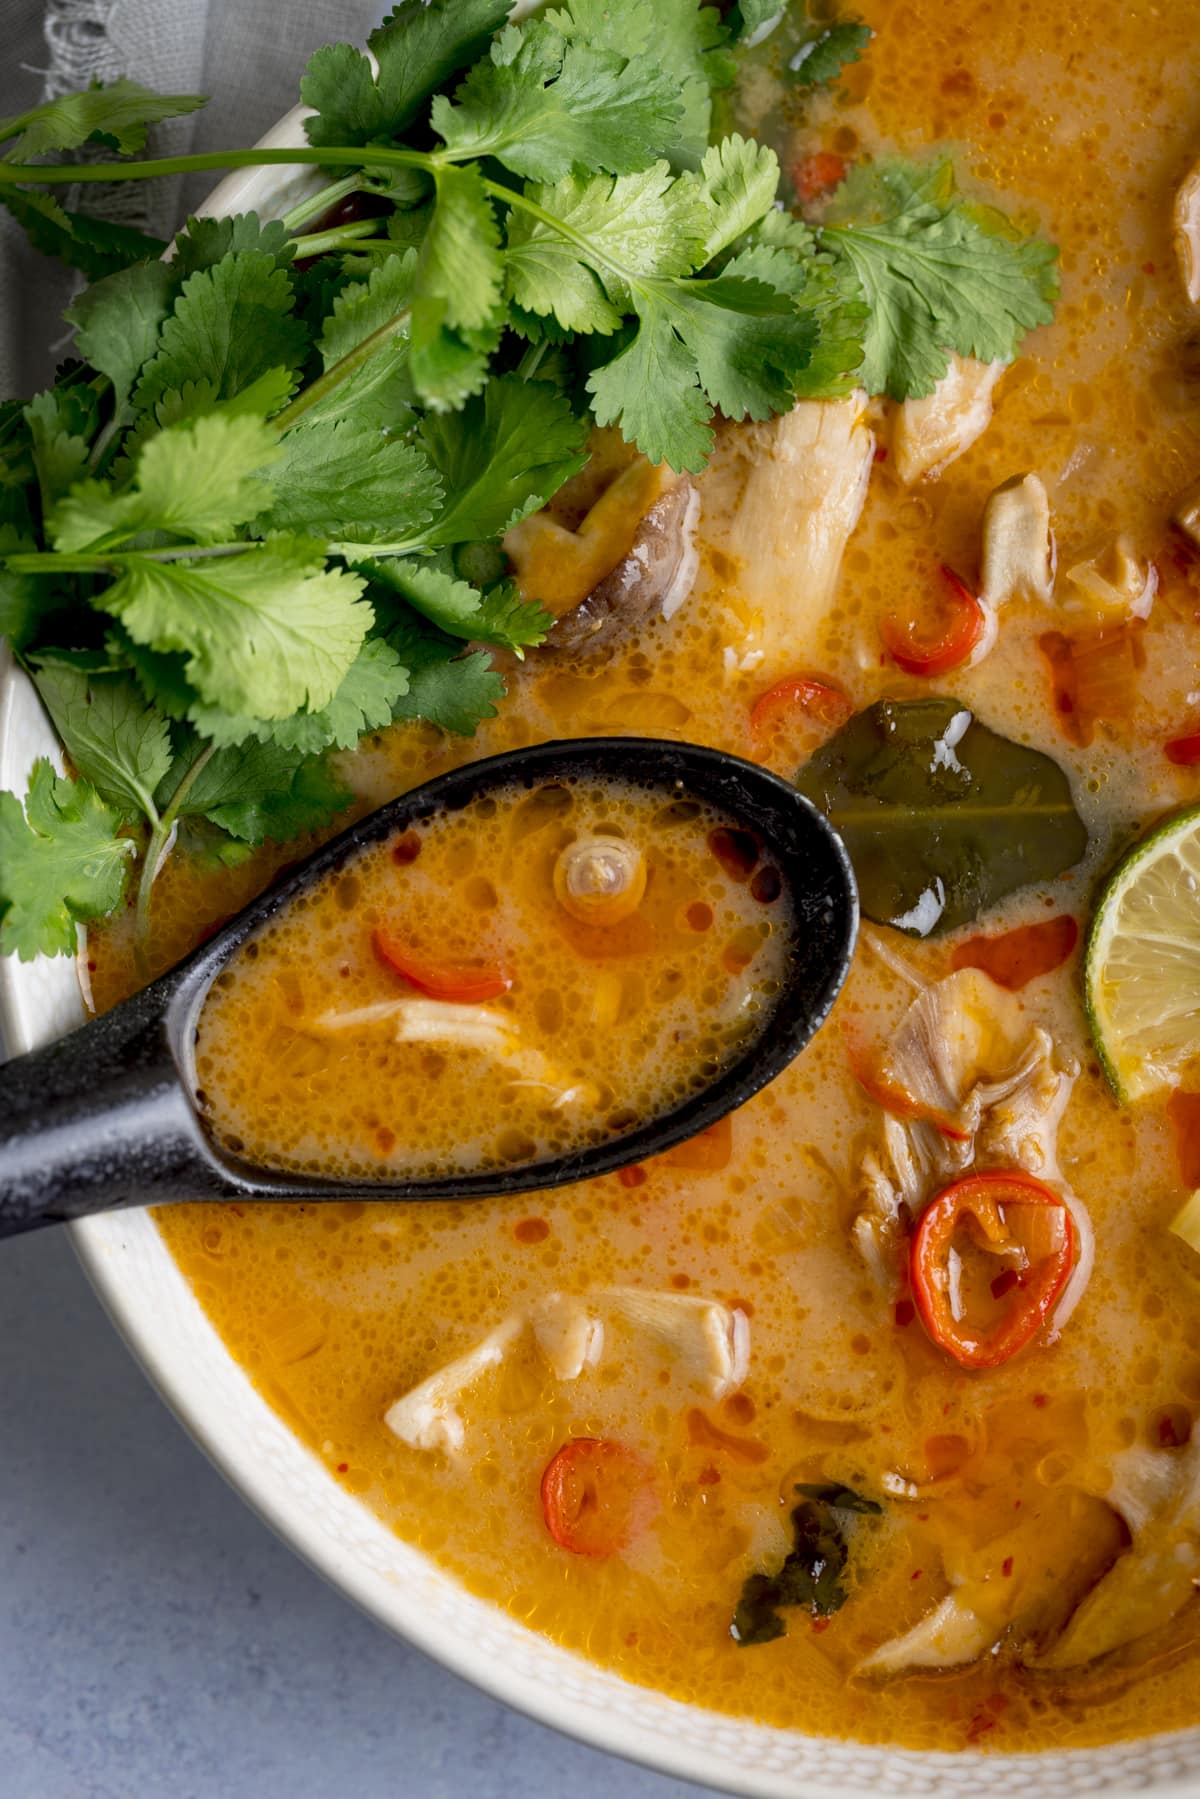 Nahaufnahme eines Löffels Suppe aus einer Schüssel Tom Kha Gai - eine thailändische Hühnersuppe mit Kokosmilch und Galgant.  Die Suppe steht in einer weißen Schüssel auf hellem Hintergrund.  Garniert wird die Suppe mit frischem Koriander.